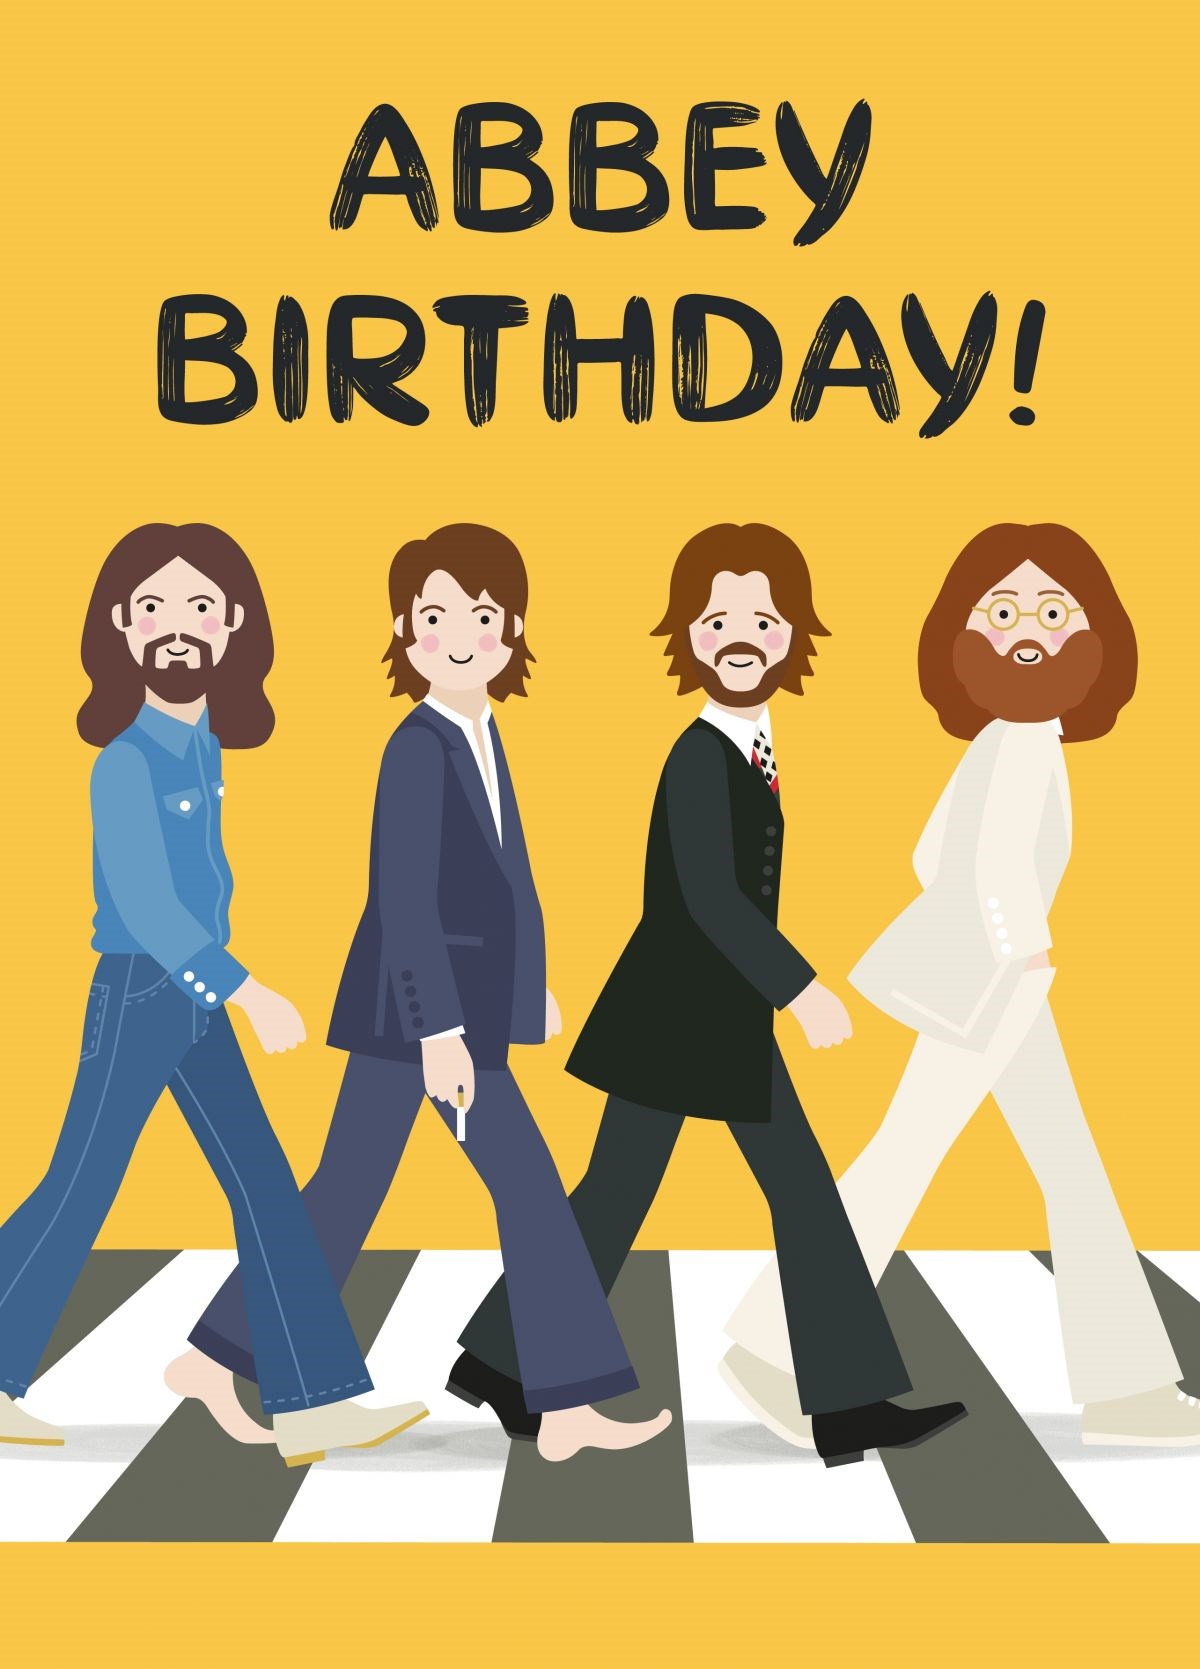 Beatles Abbey Birthday! Card